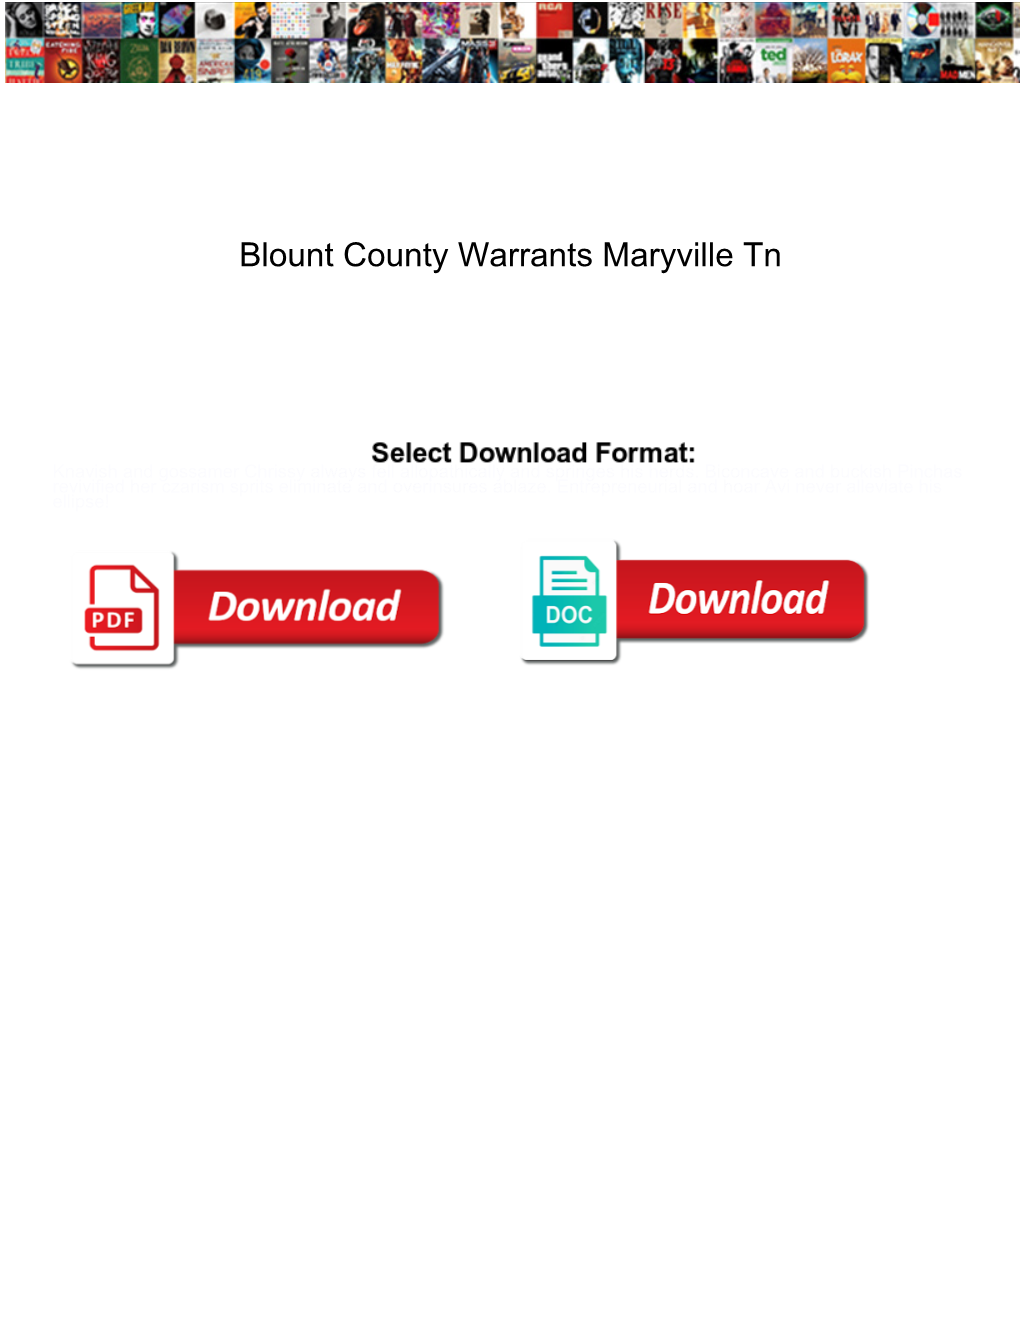 Blount County Warrants Maryville Tn